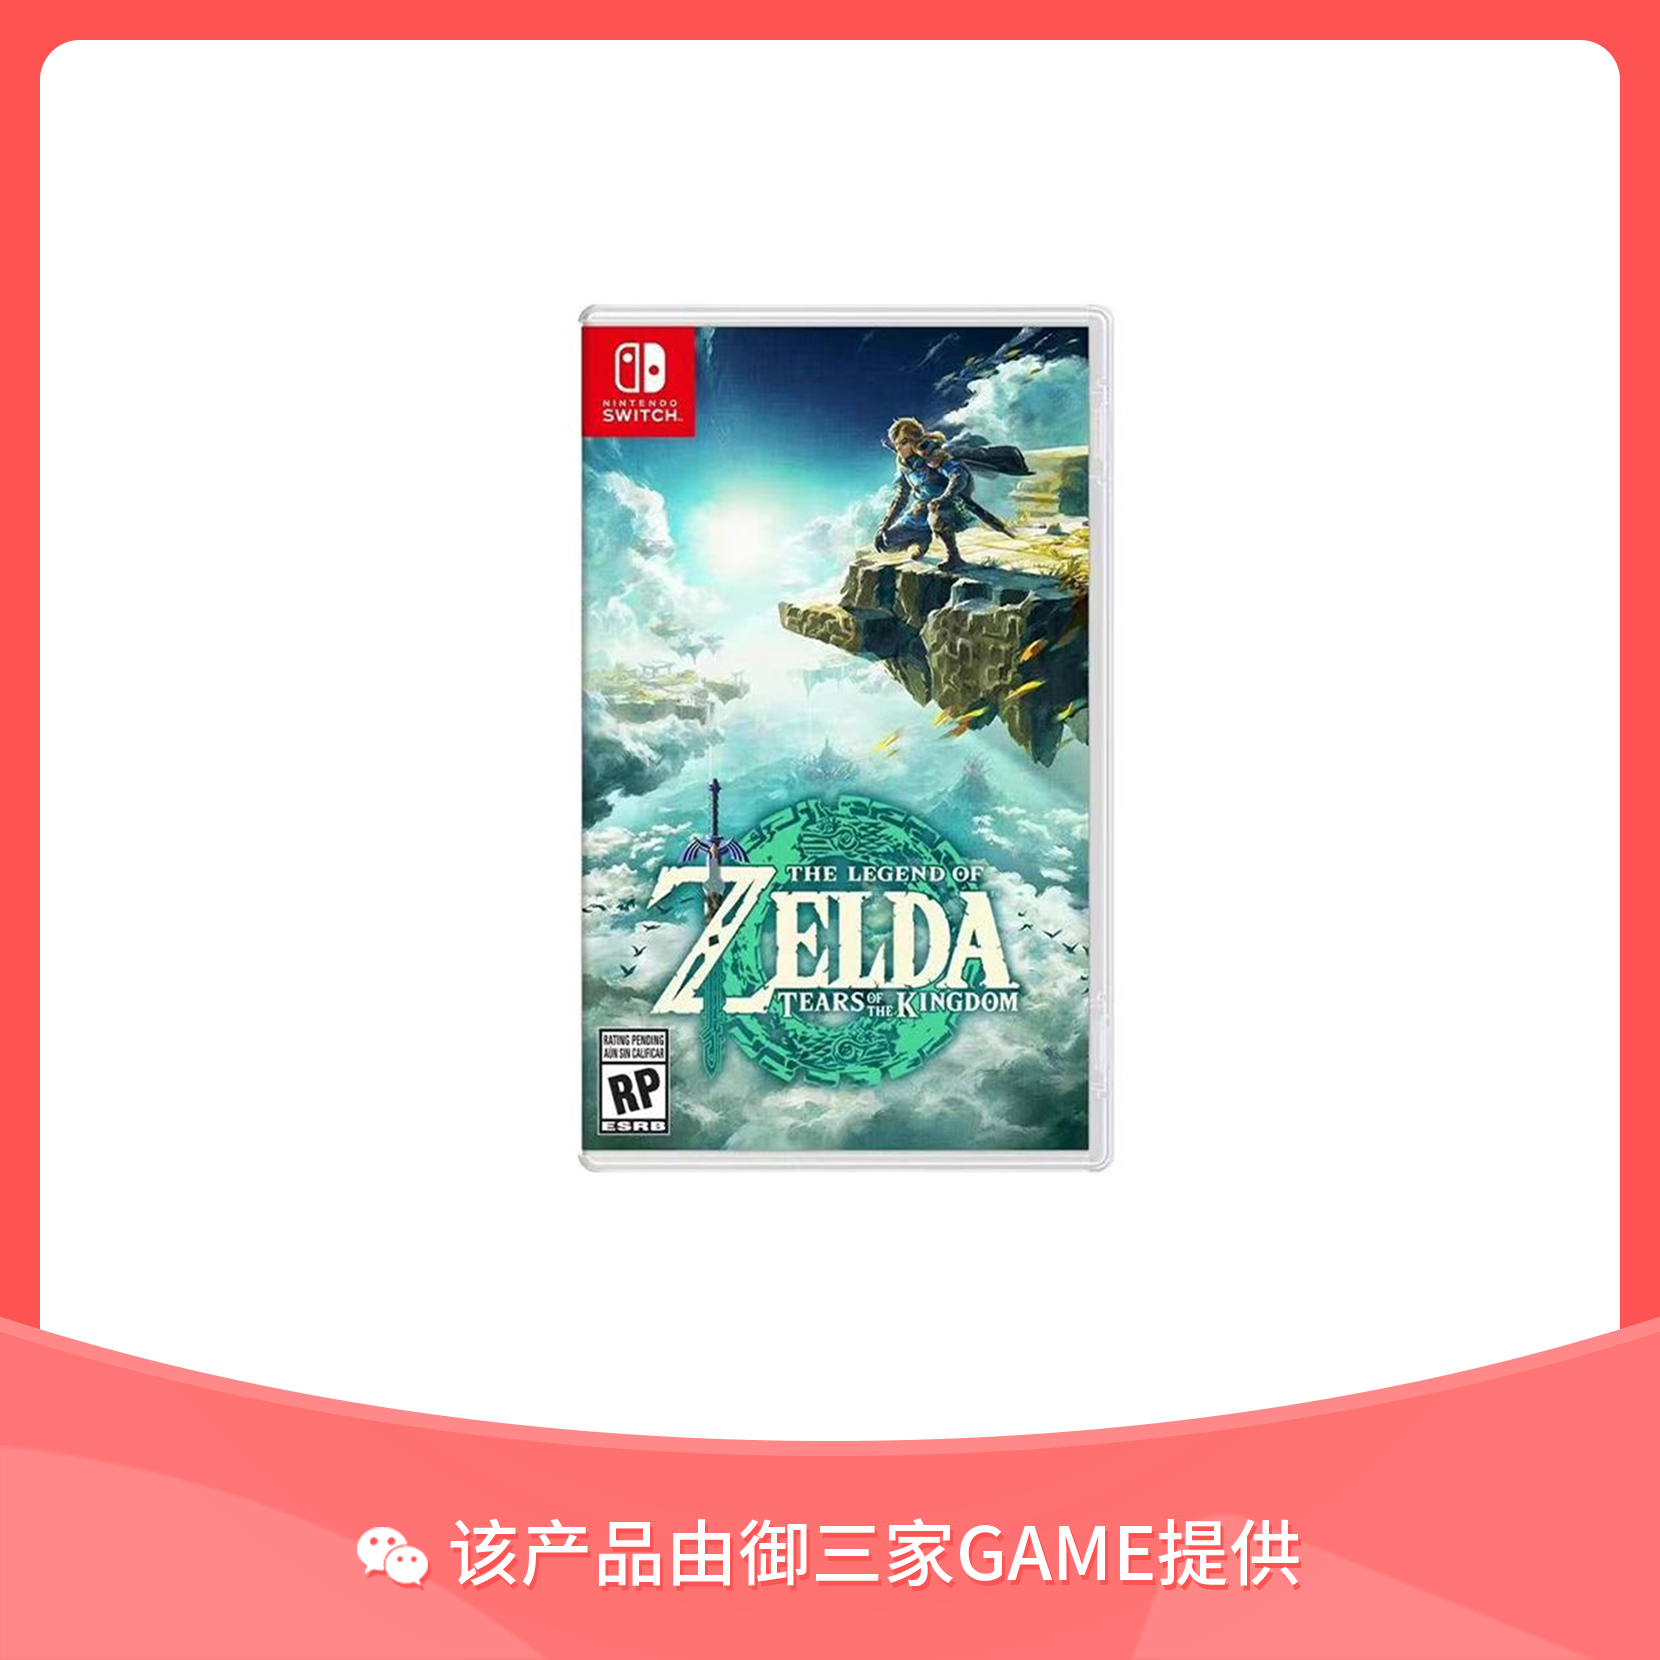 任天堂Switch游戏 塞尔达传说2 塞尔达2 王国之泪 中文